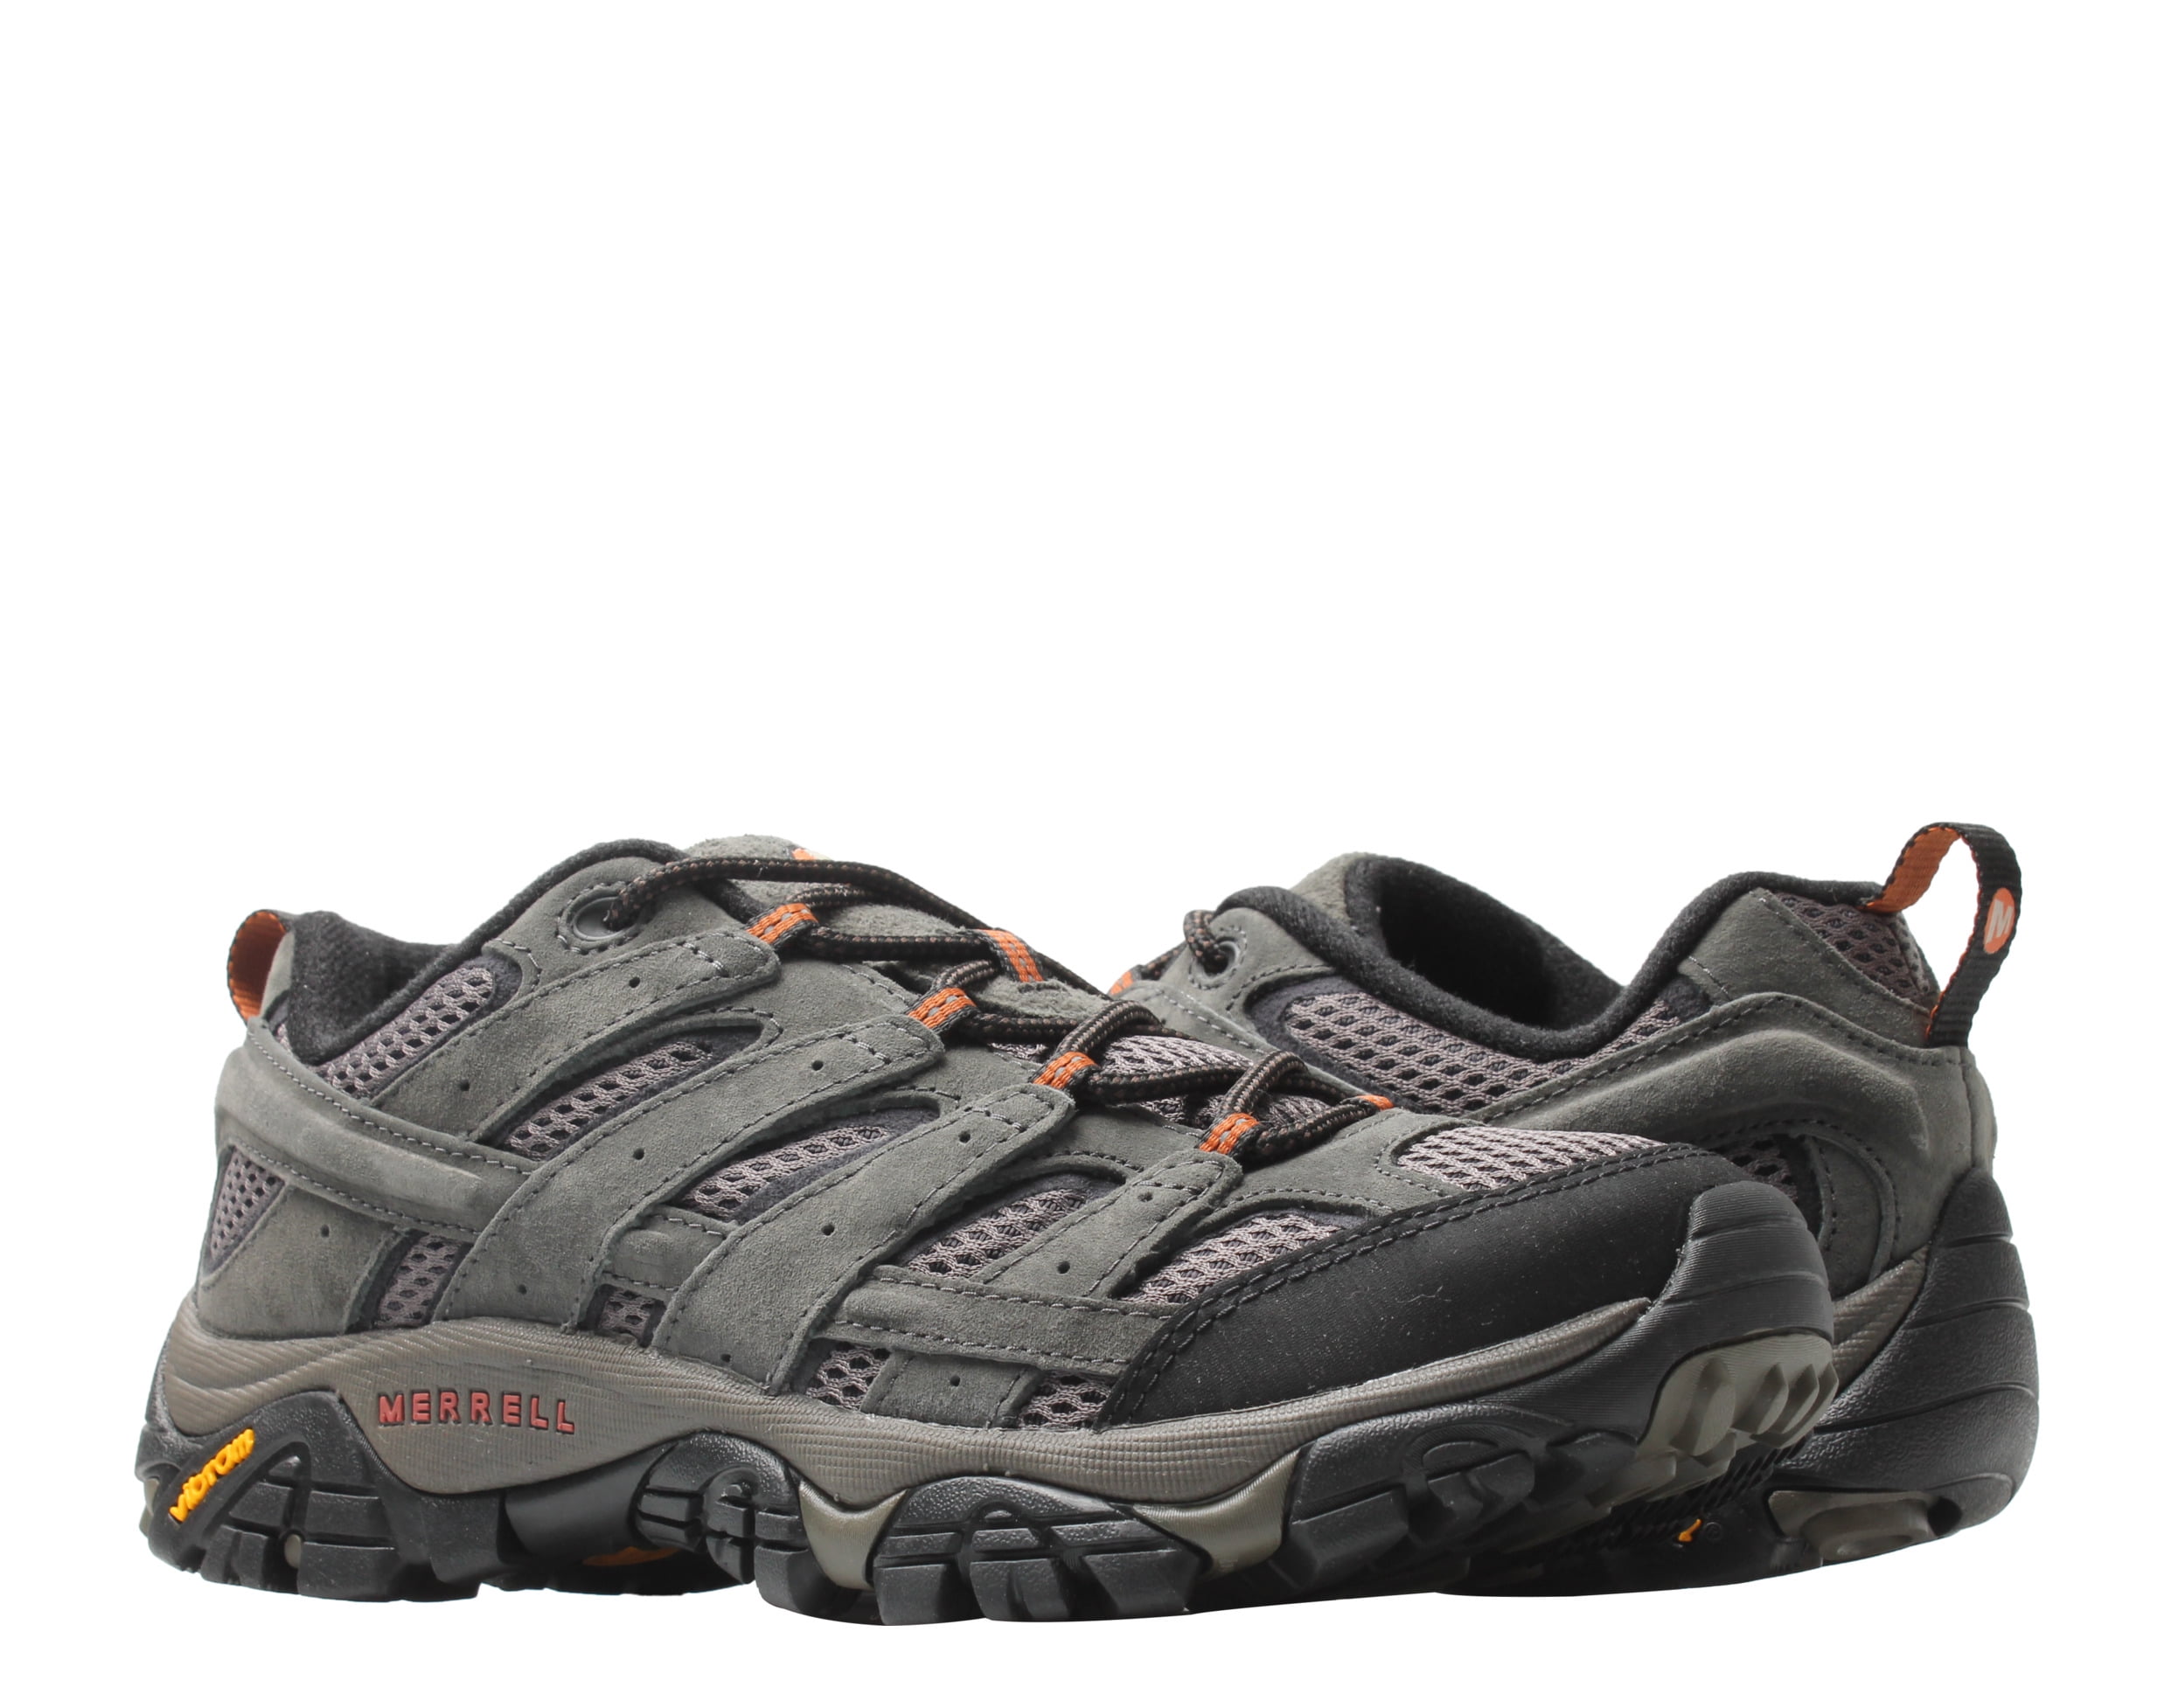 Merrell Moab 2 Ventilator Men's Hiking Shoes Size 9.5M